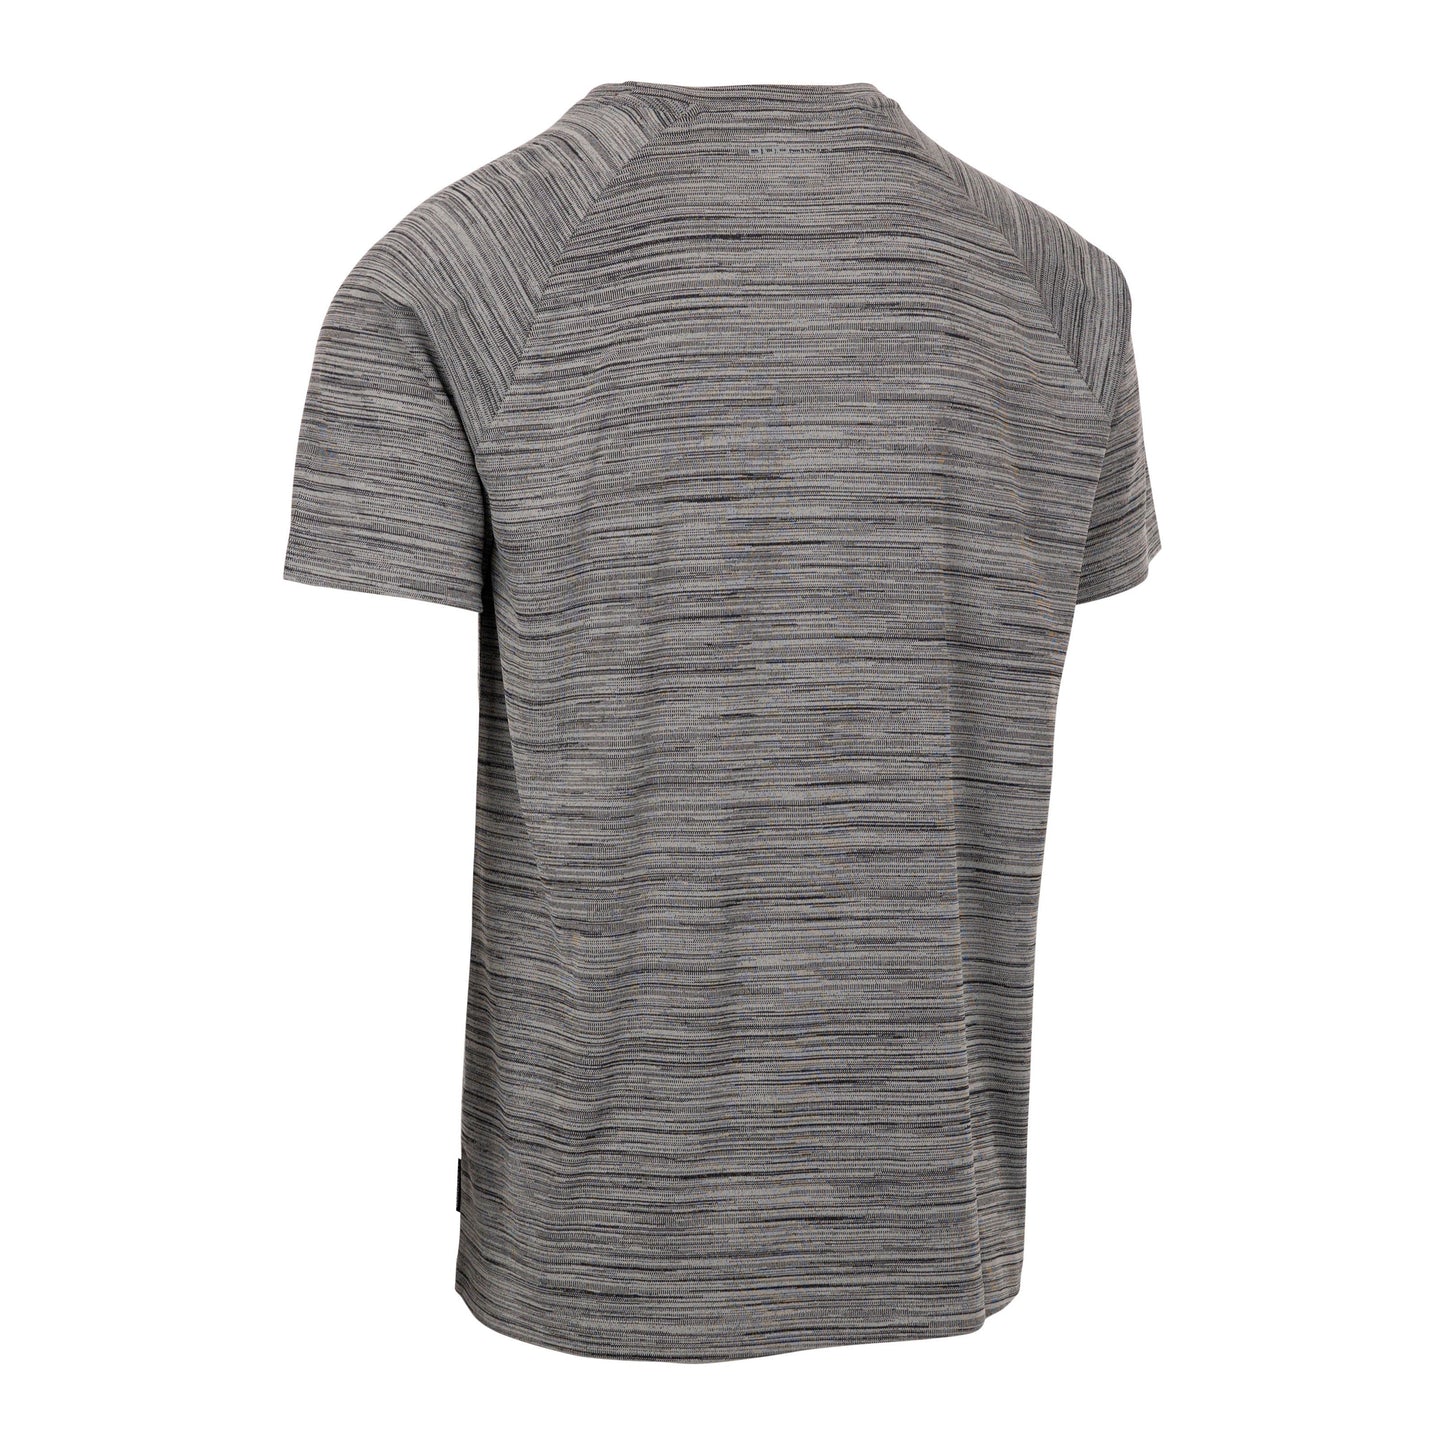 Leecana Men's Quick Dry Active T-Shirt in Grey Marl